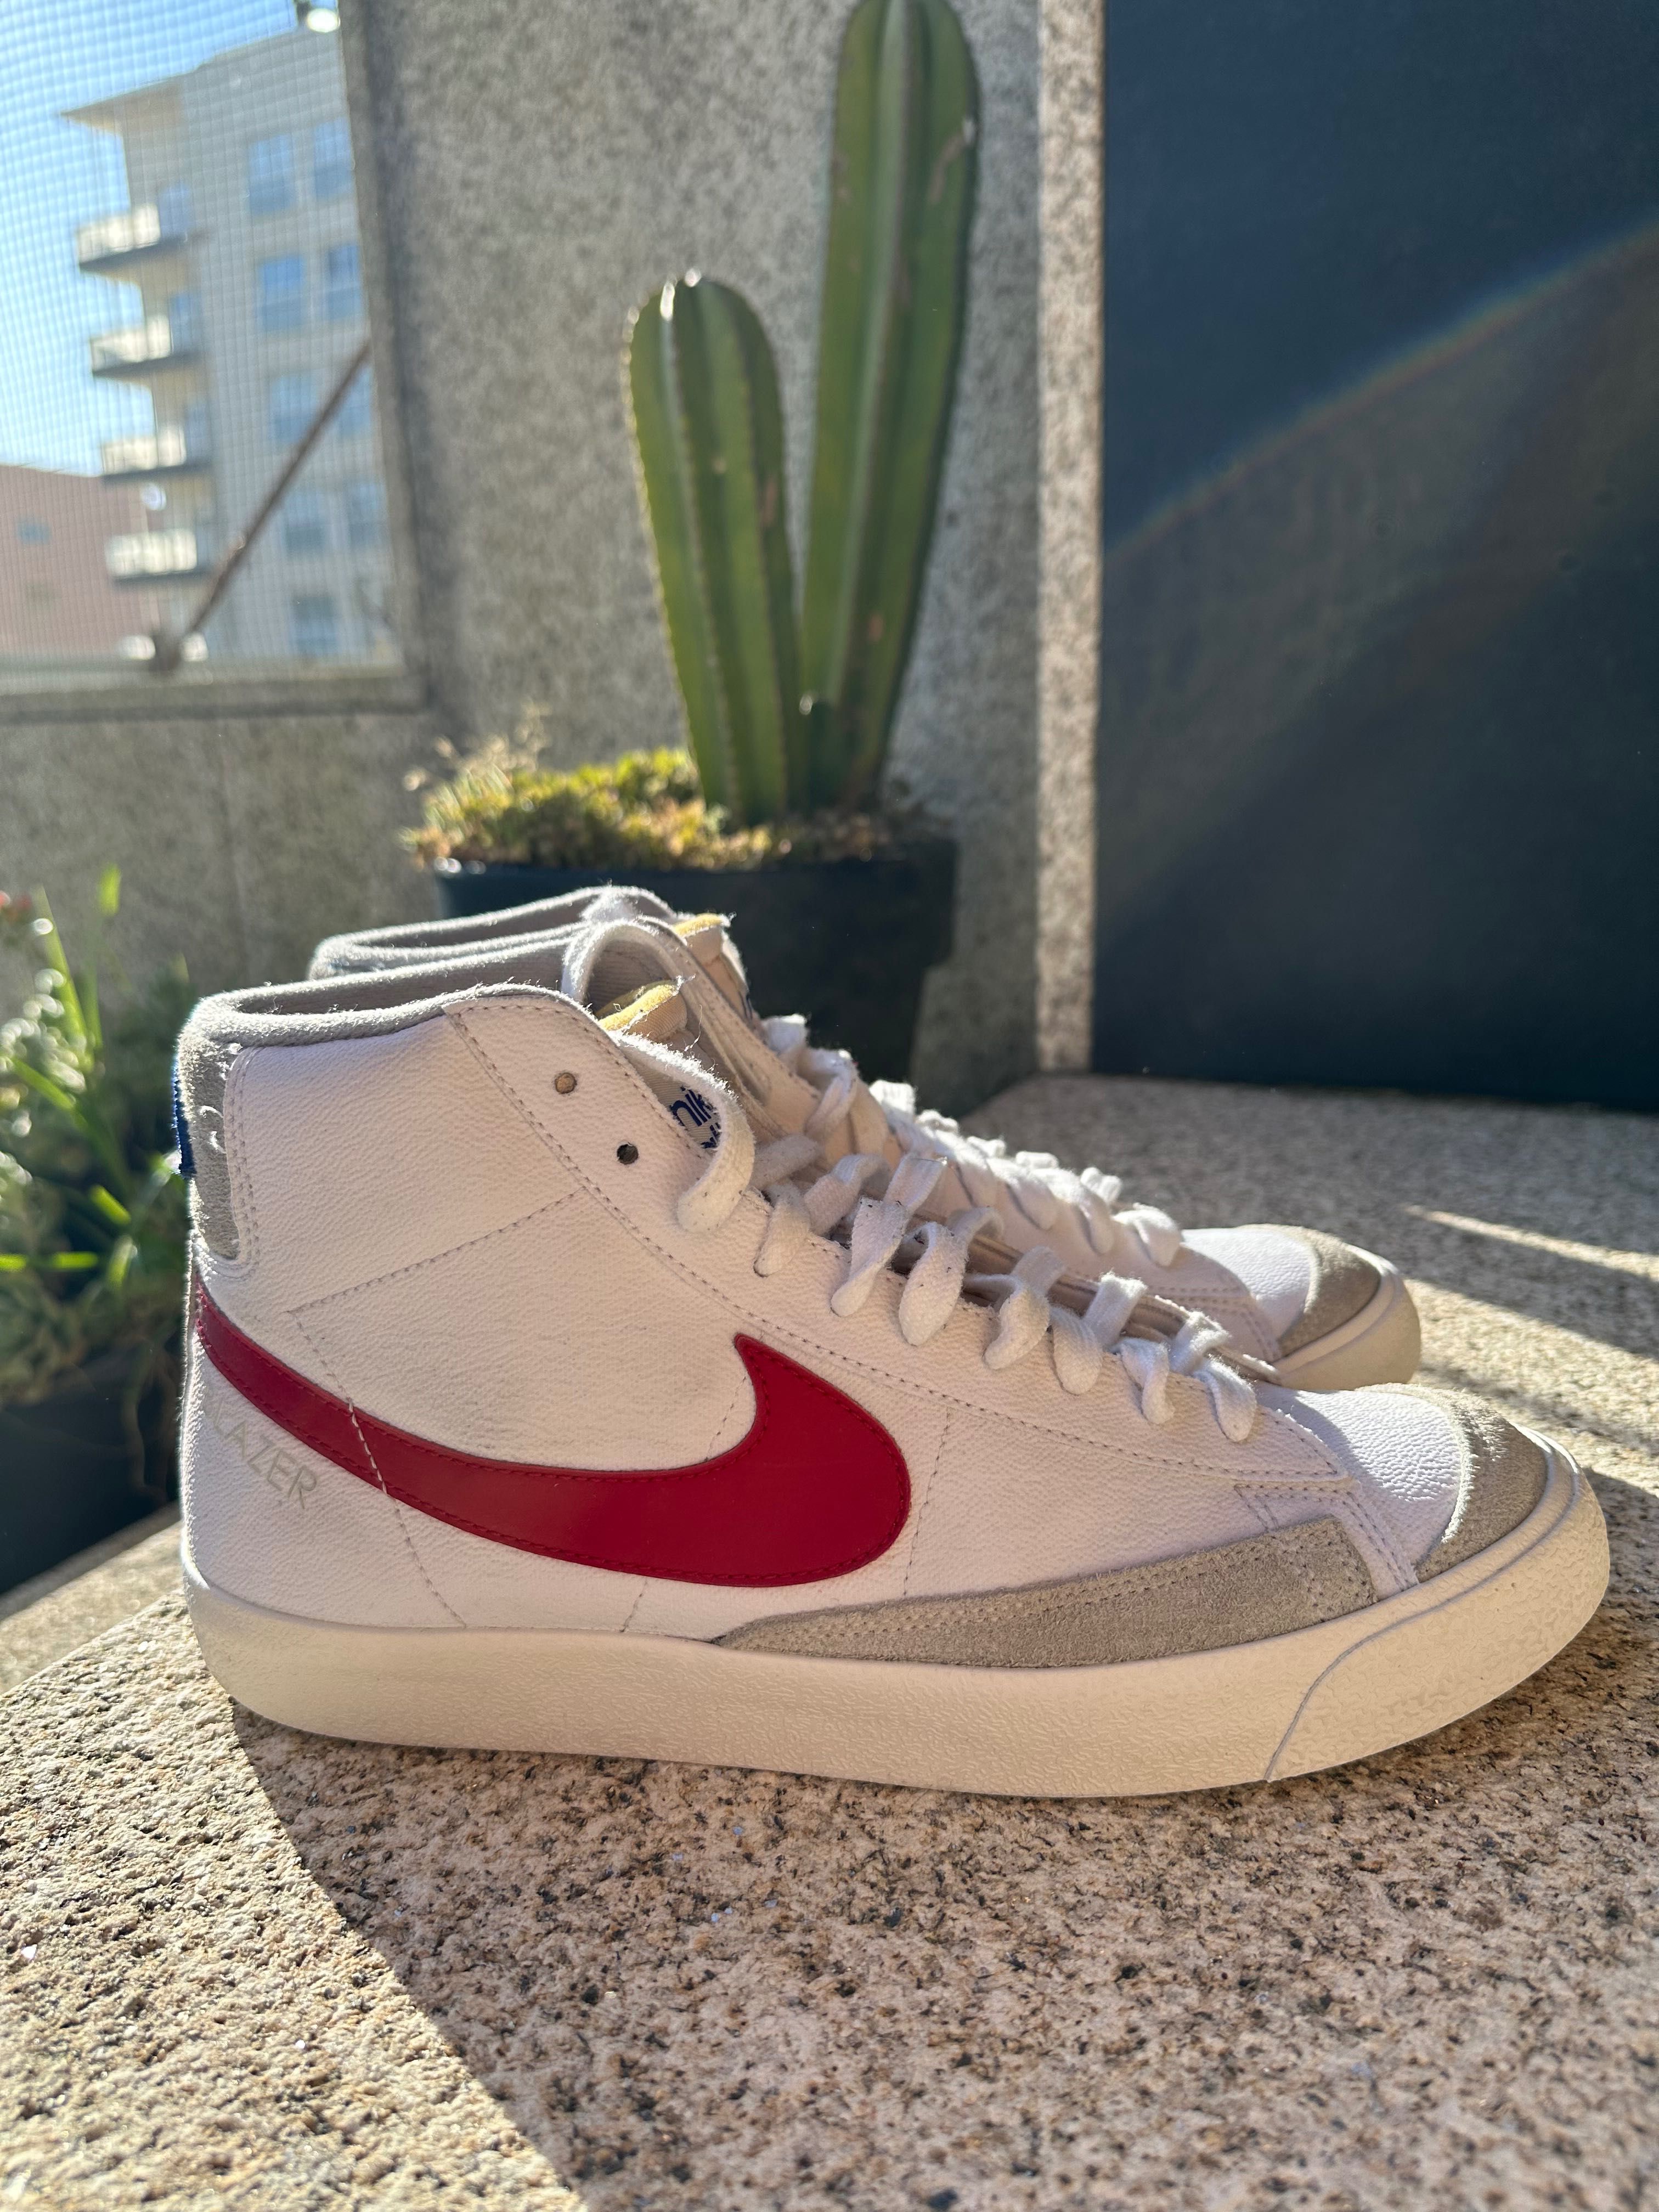 Nike Blazer brancas e vermelhas